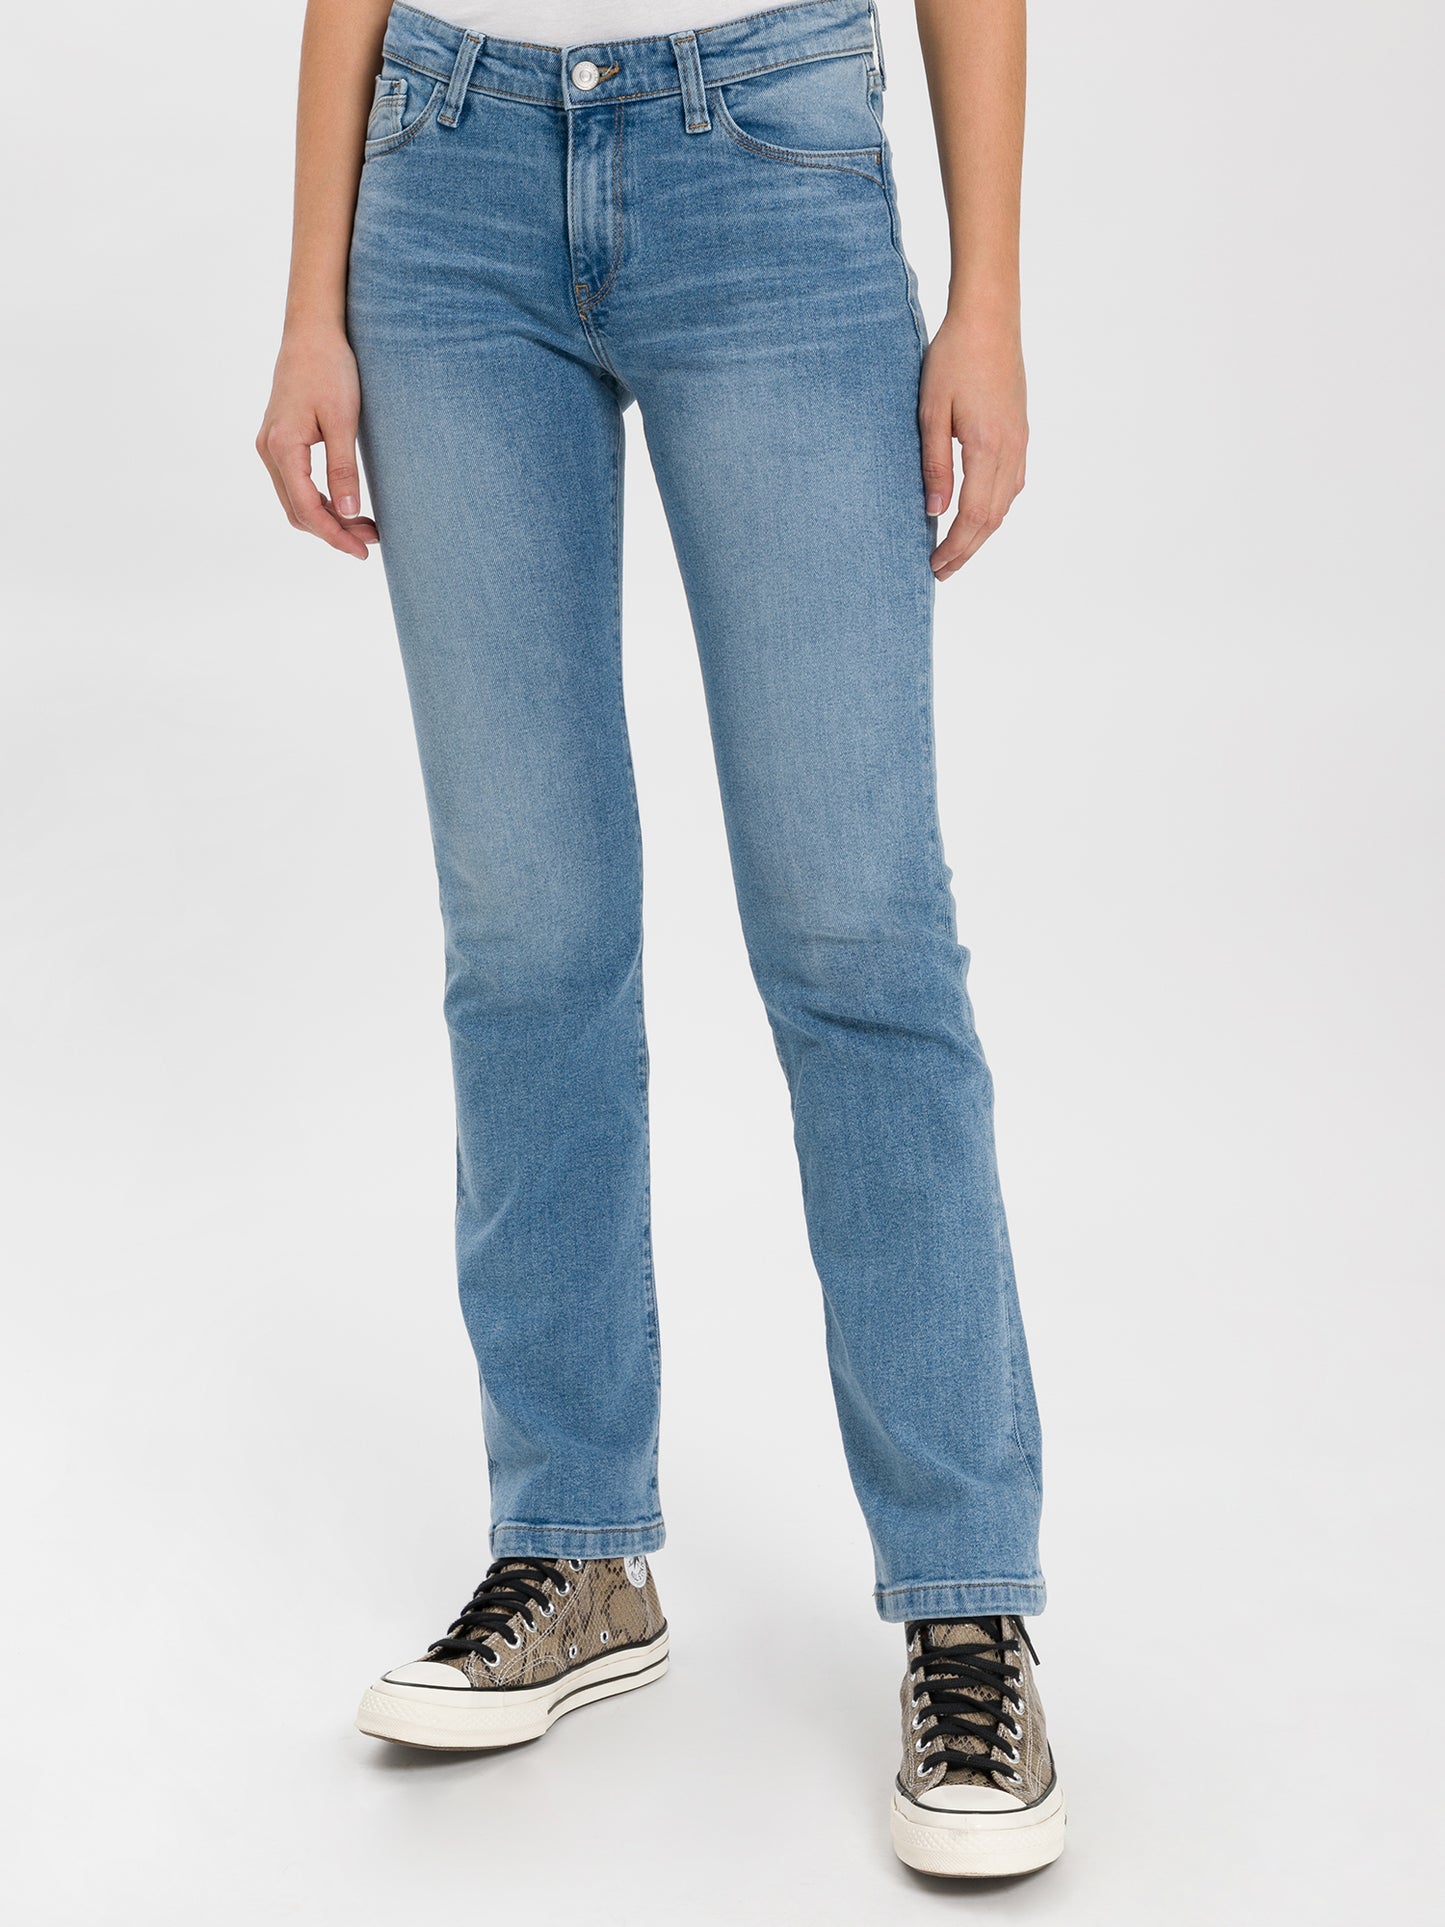 Lauren Damen Jeans Regular Fit High Waist Bootcut hellblau